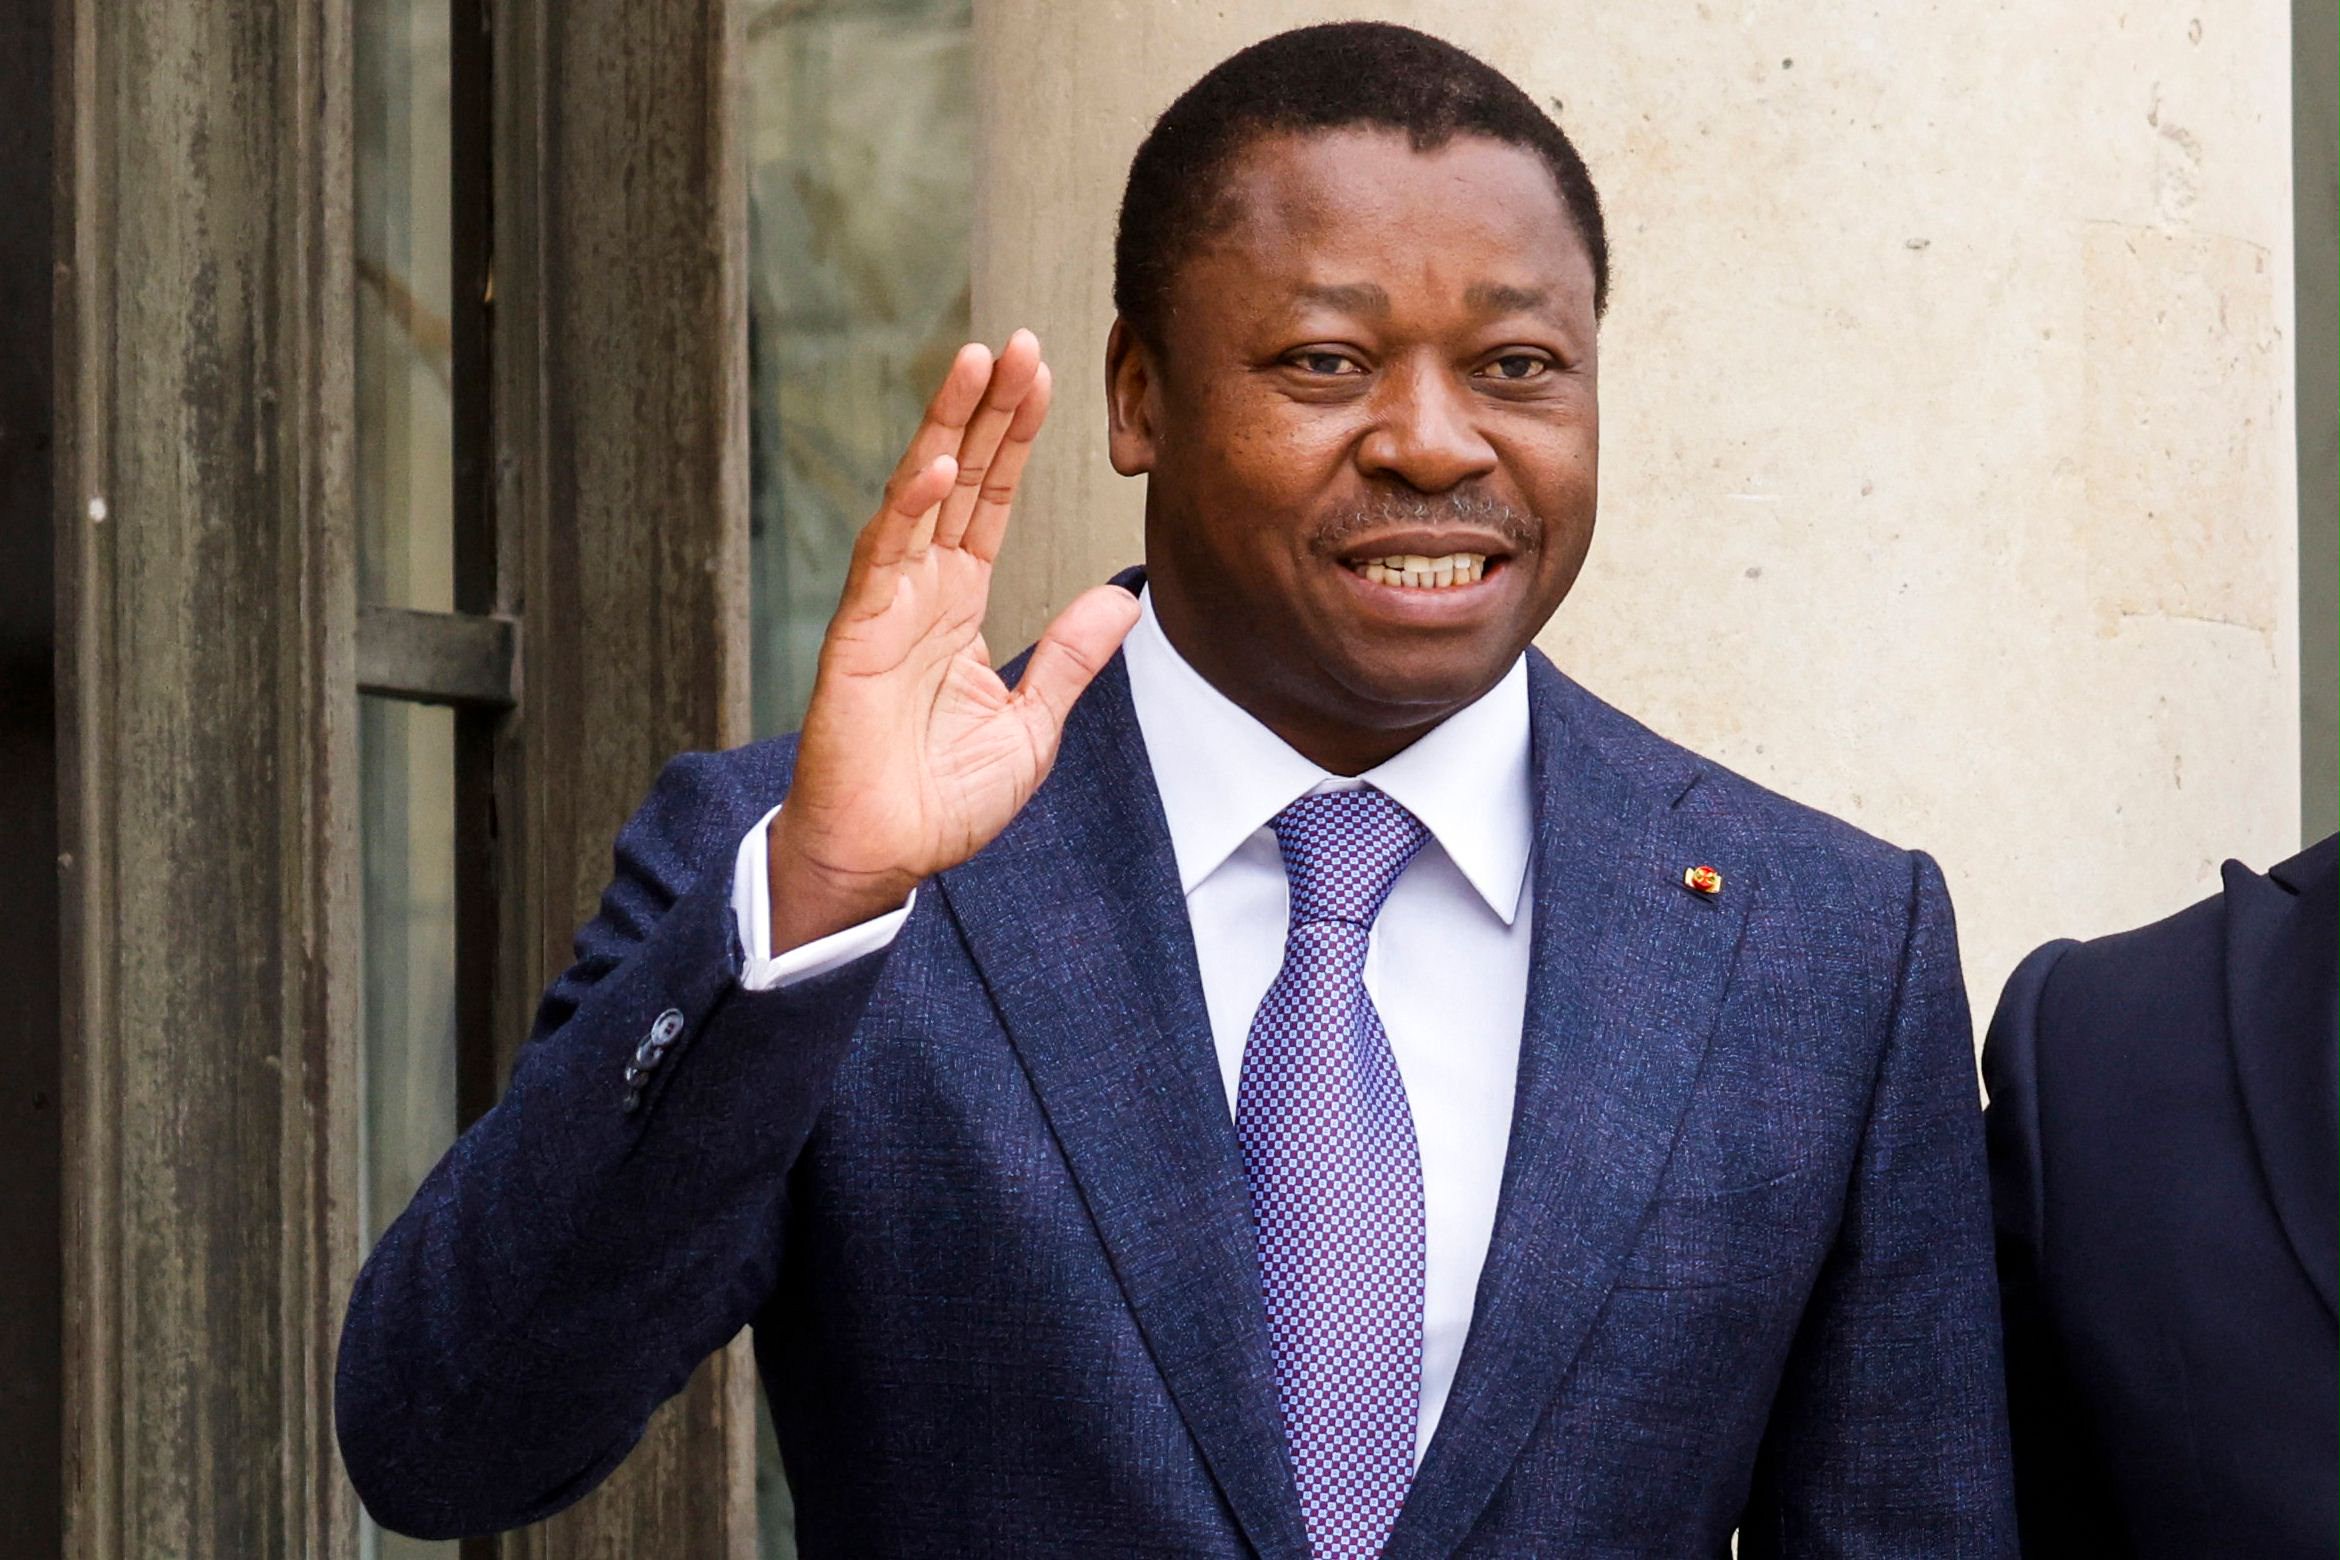 togon hallitseva puolue voitti vaalit, presidentti voi pidentää aikaansa vallassa lähes loputtomiin